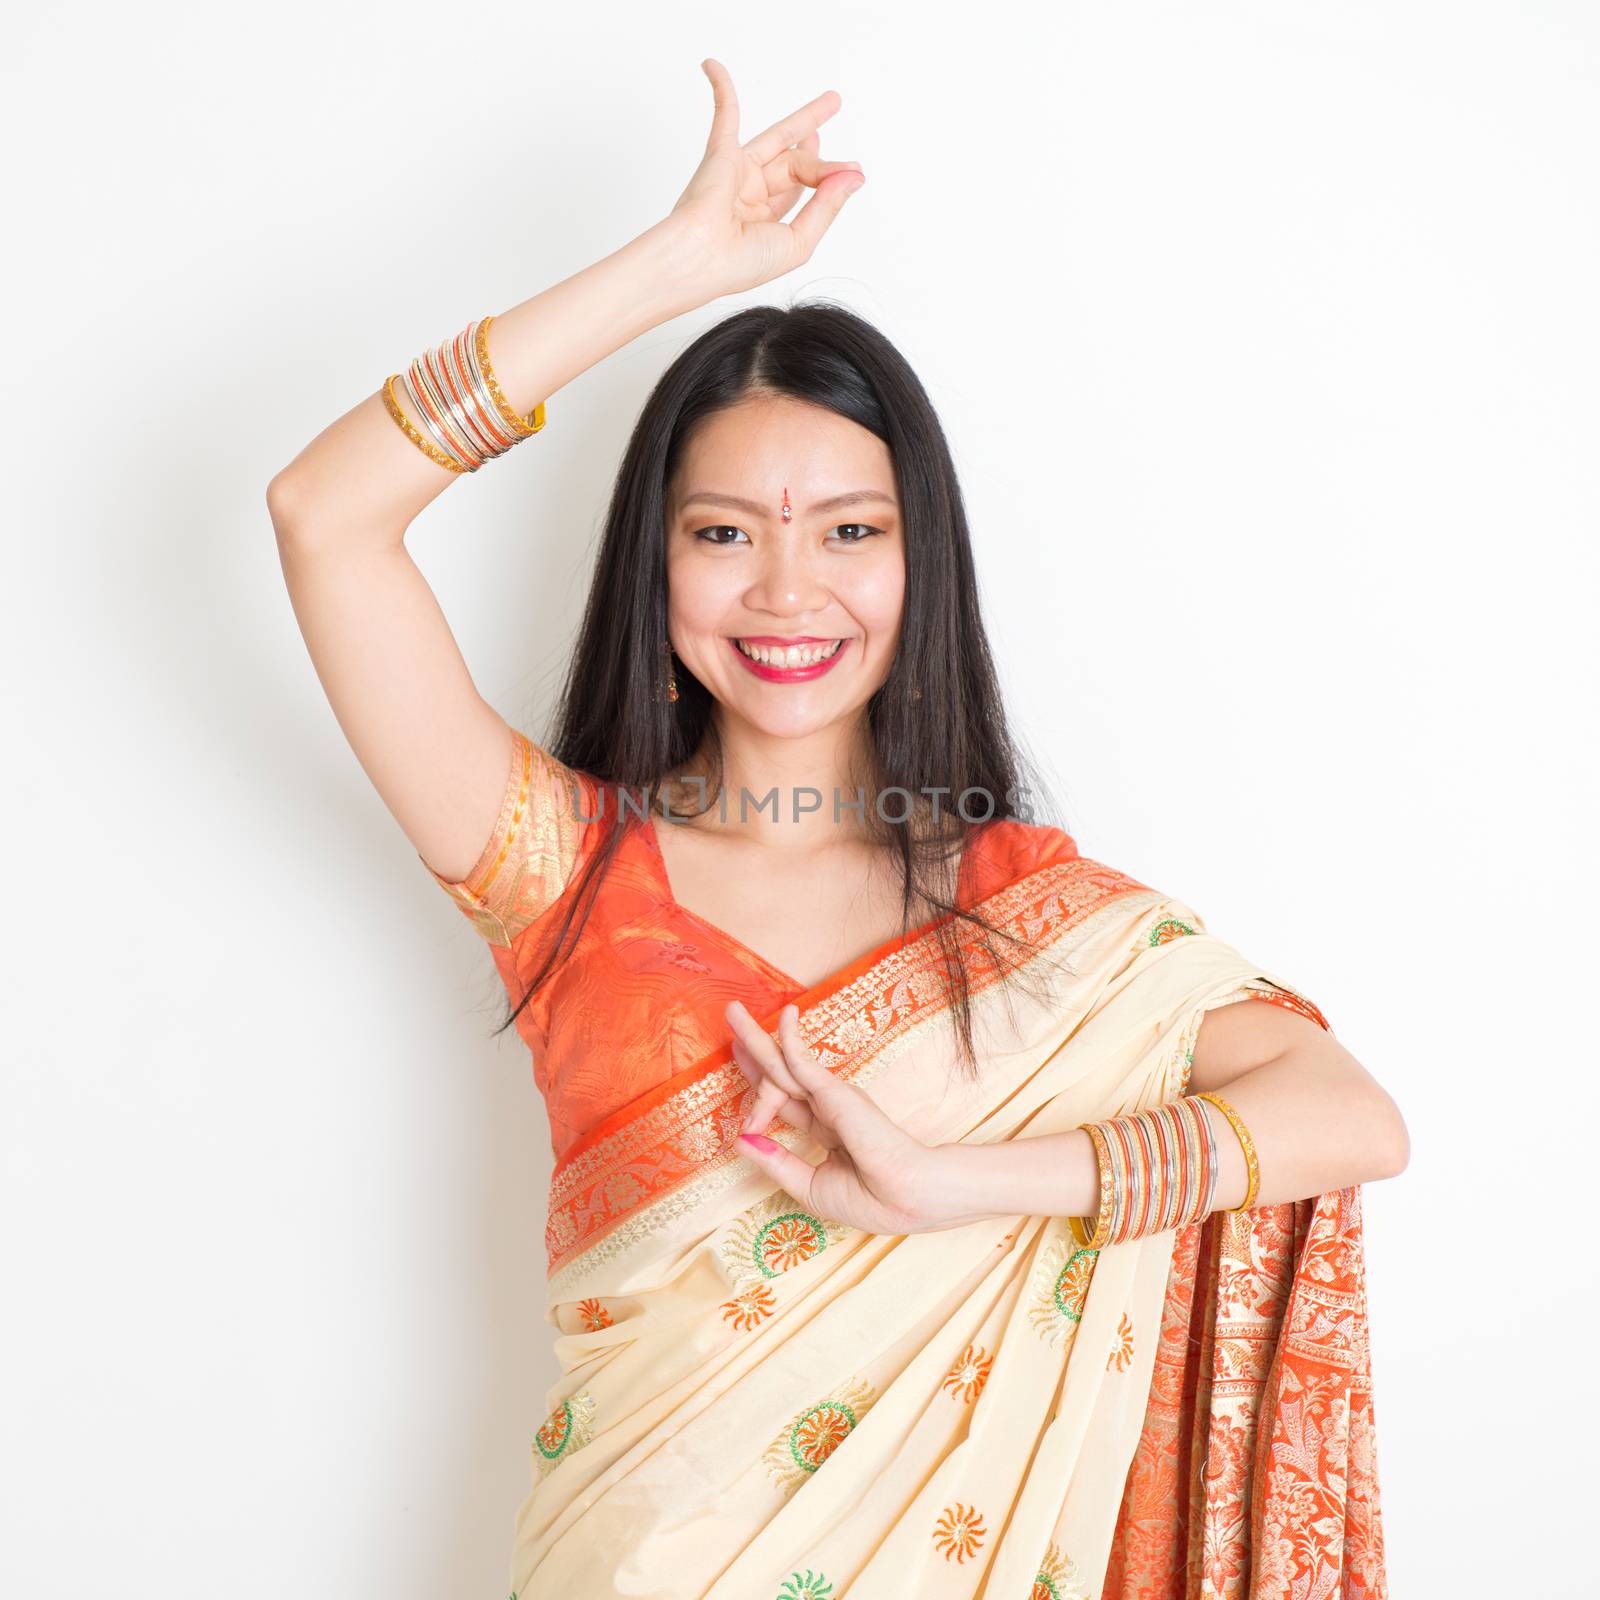 Young girl in Indian sari dress dancing by szefei